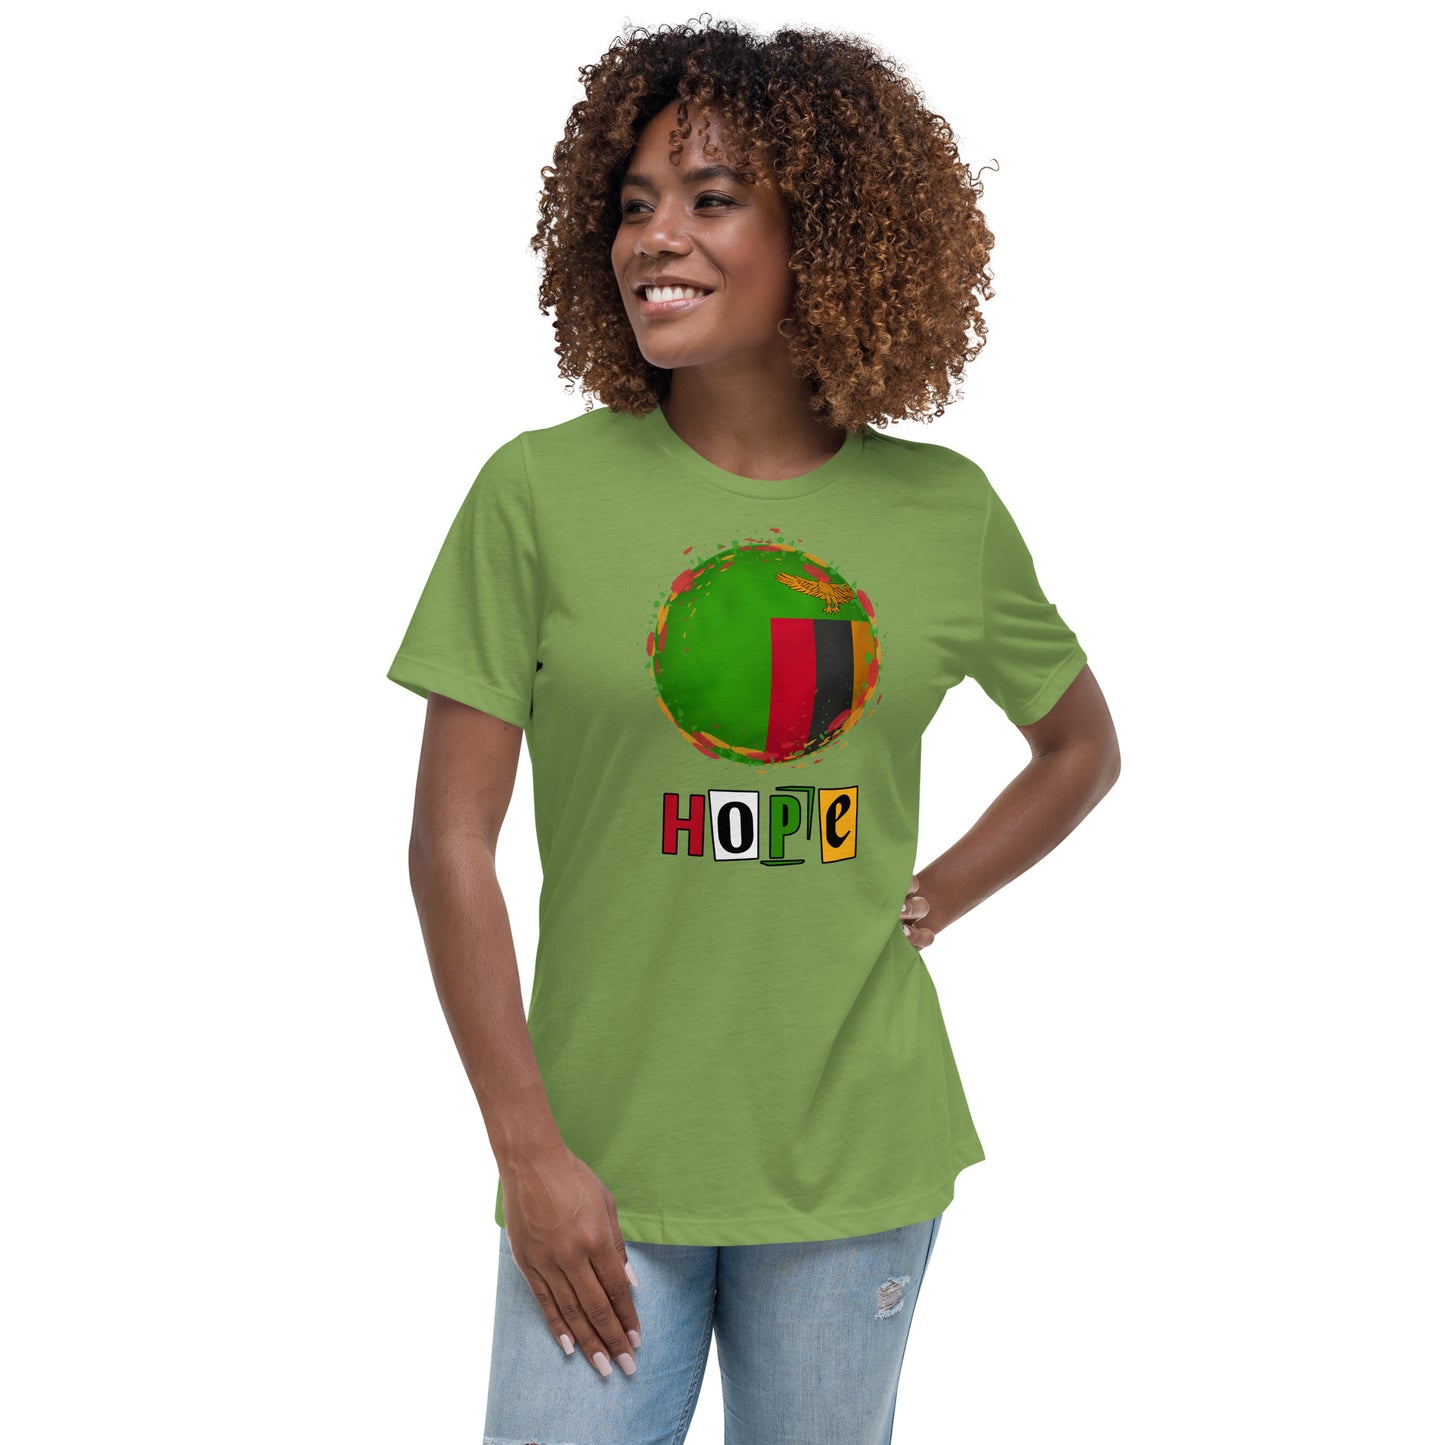 Women's Relaxed Zambia Hope T-Shirt